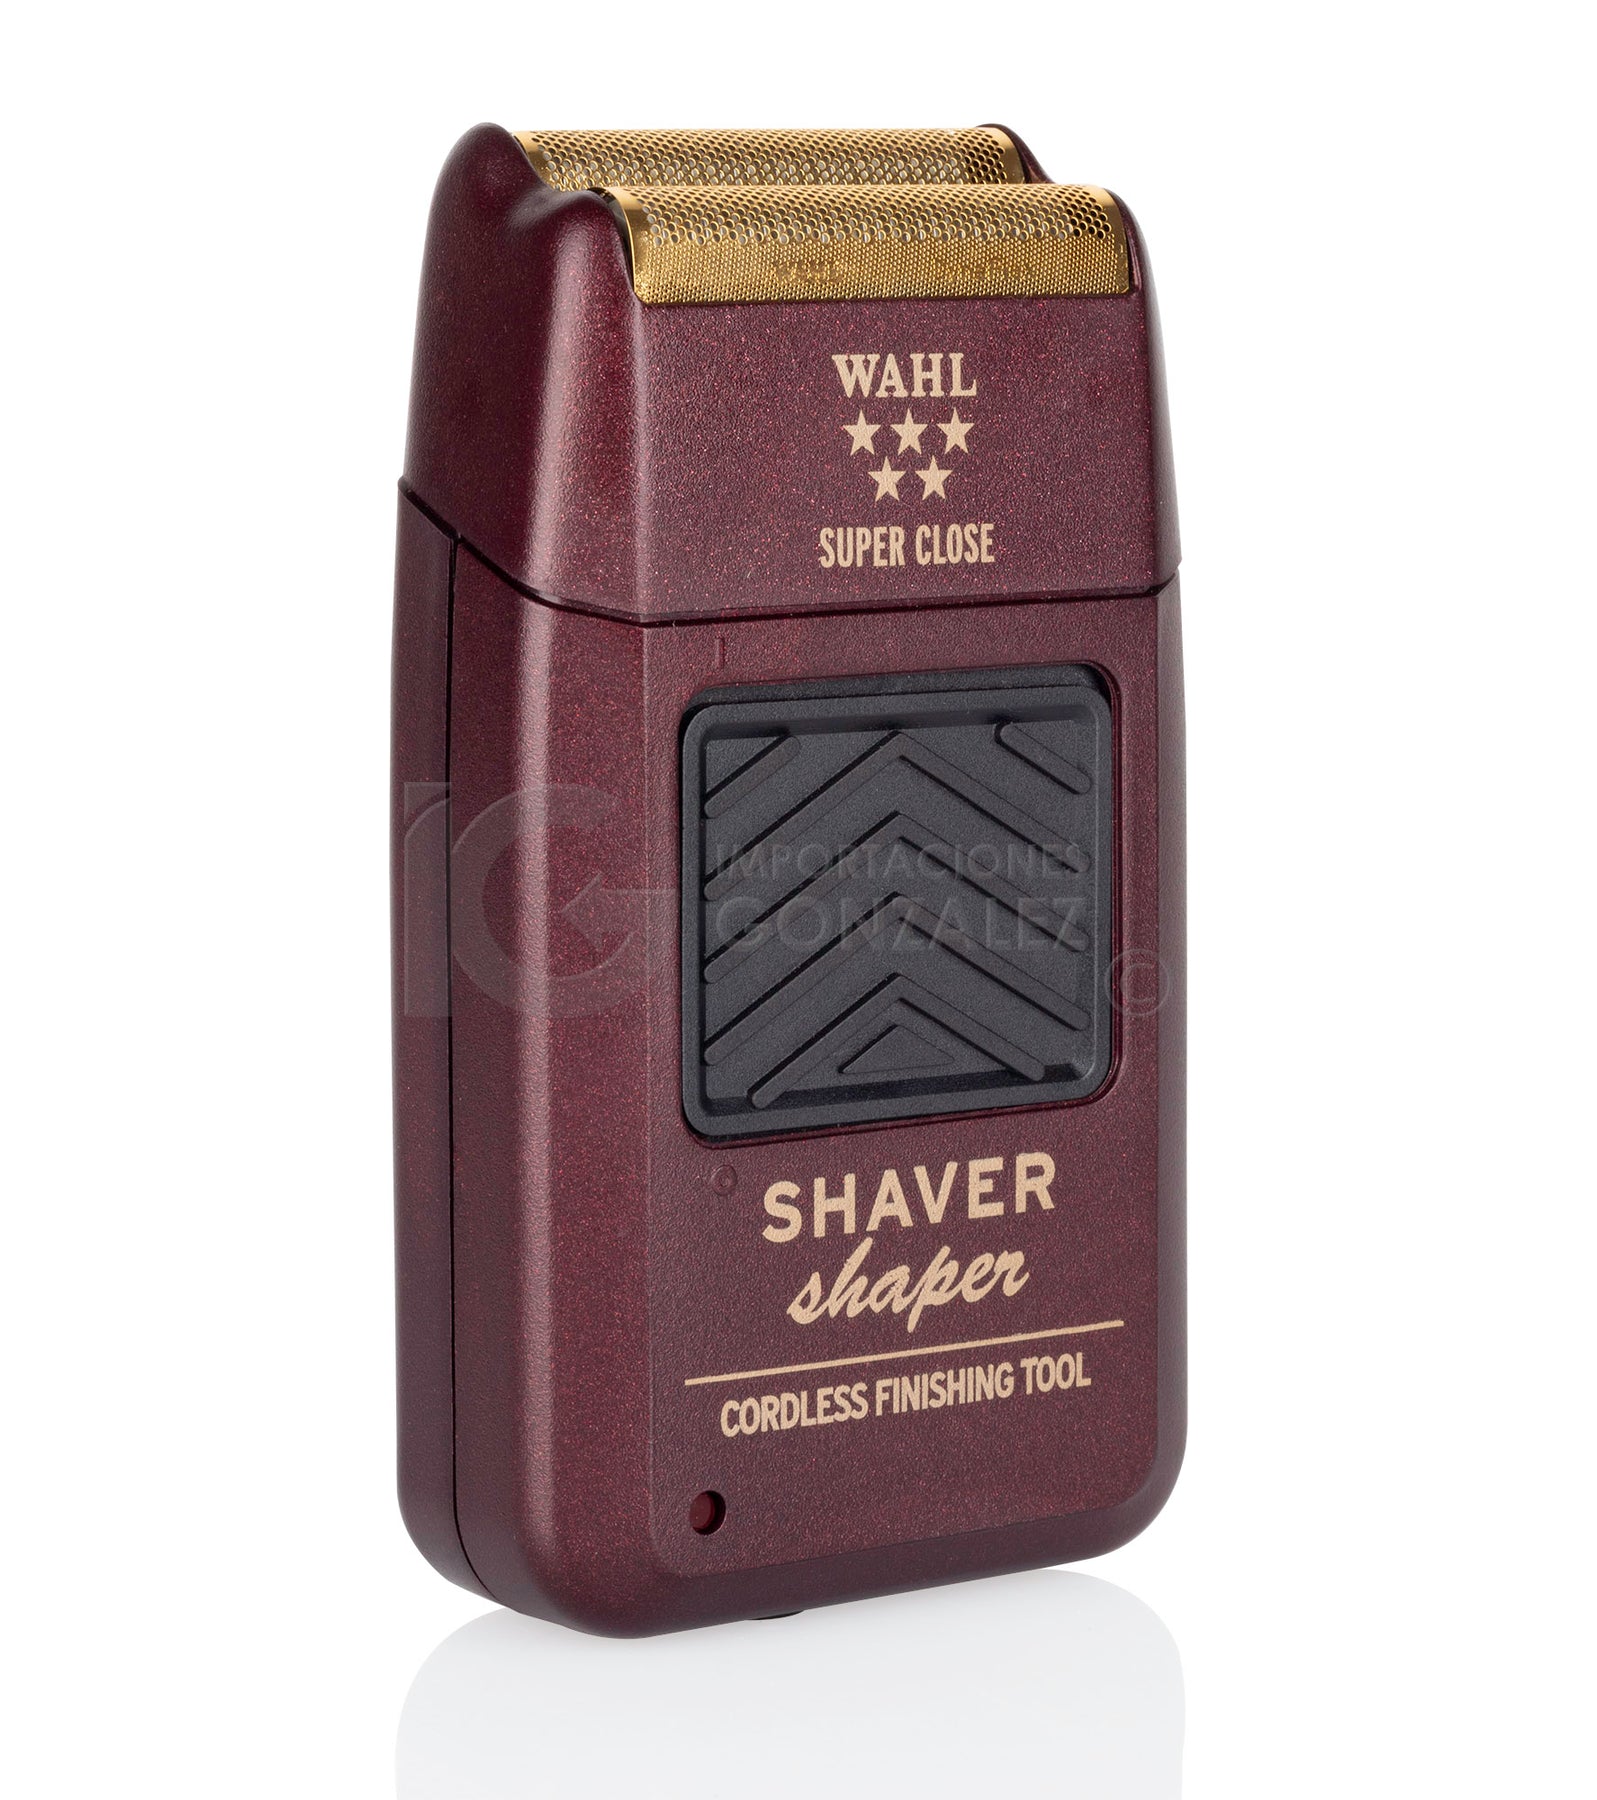 RASURADORA SHAVER SHAPER Wahl 8061: Ideal para un afeitado limpio y apurado